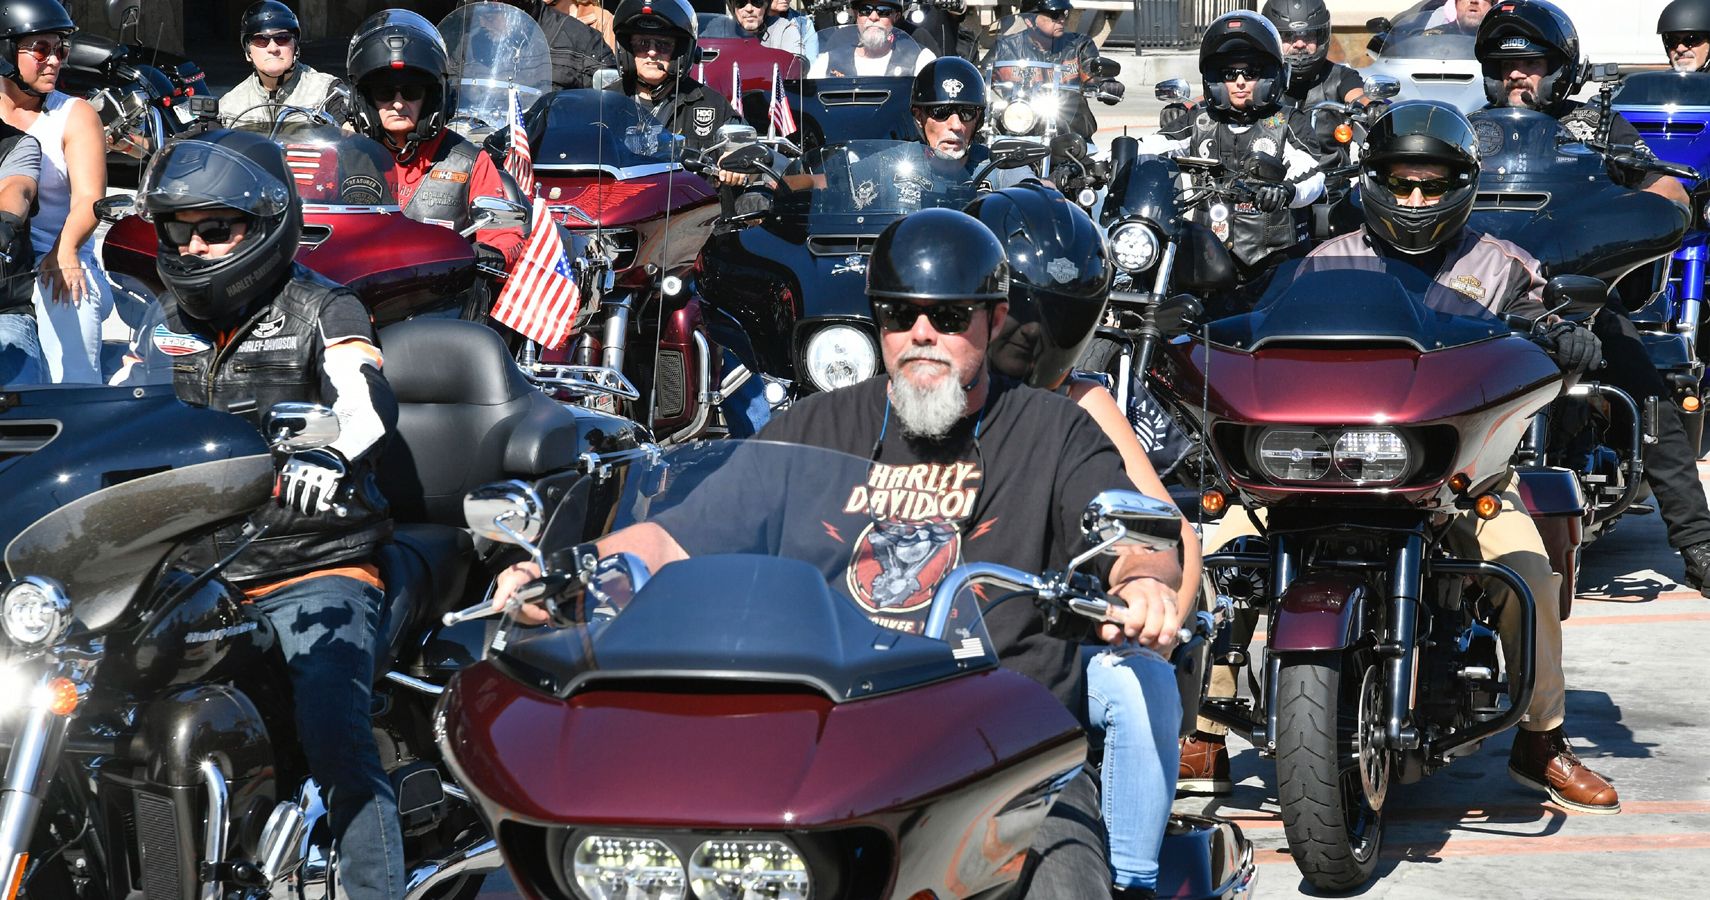 American Motorcycle Club Members Riding On Their Favorite Bike, Harley-Davidsons